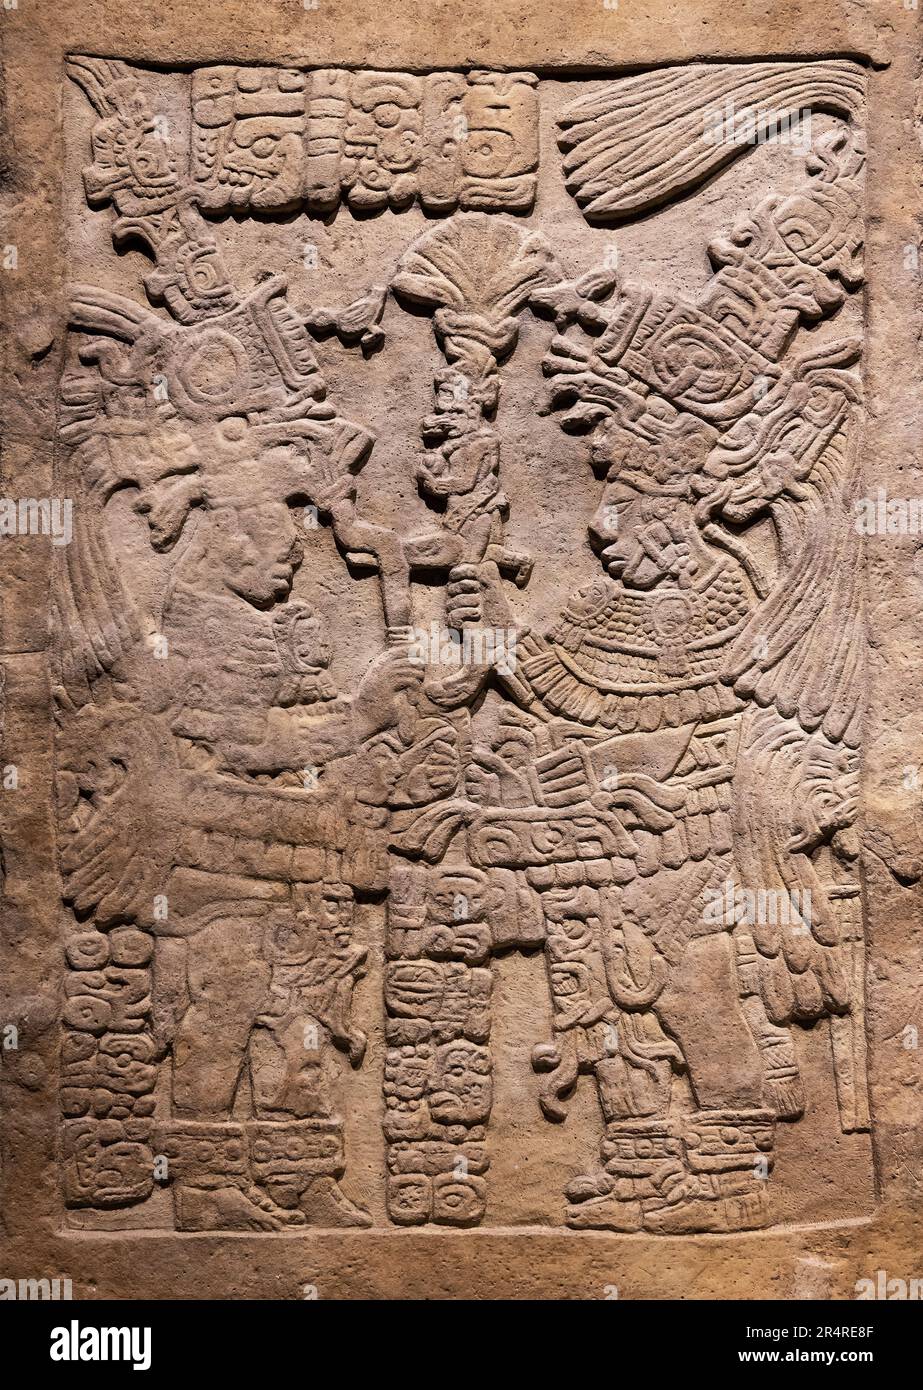 Mayan lintel carved stone, Yaxchilan, Chiapas, Mexico. Stock Photo